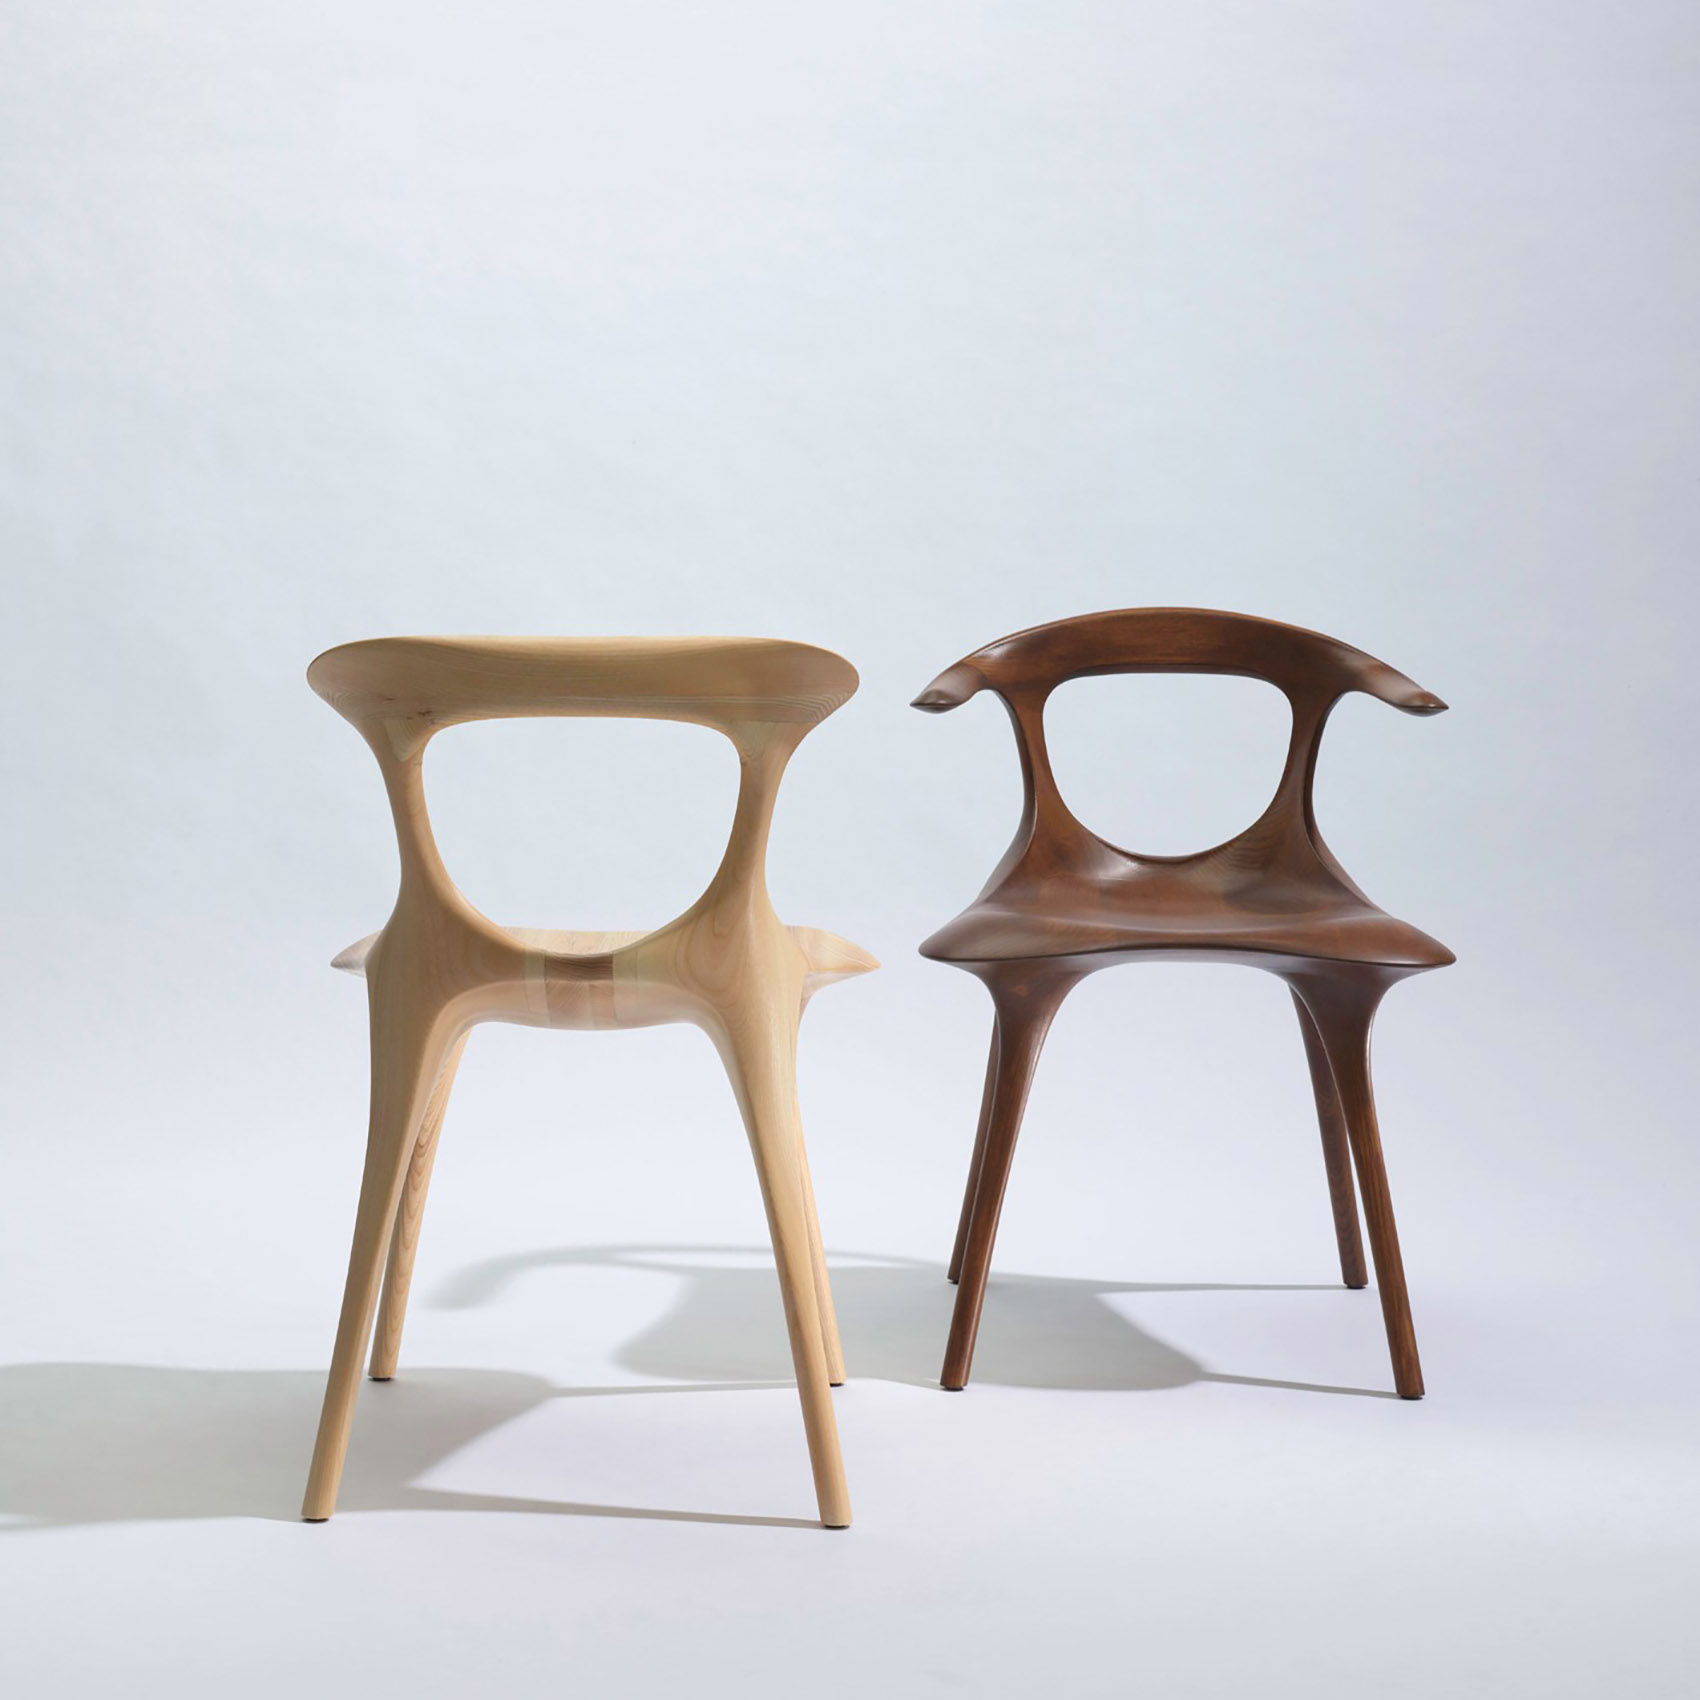 MAD携“骨椅”“平潭”“天镜”三件作品参展2018米兰设计周/有机自然的设计，与天地互动。-4